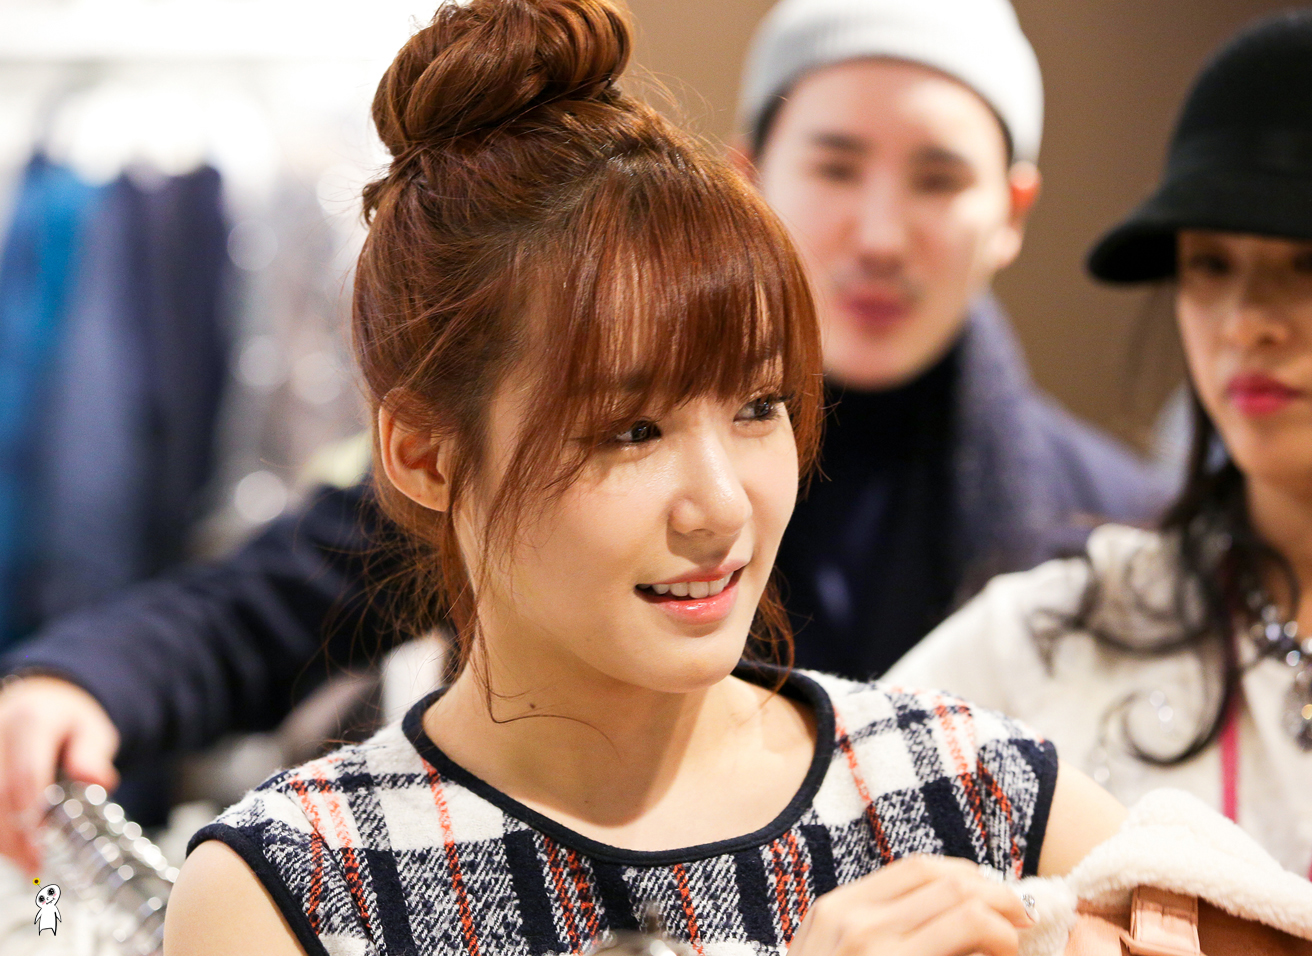 [PIC][28-11-2013]Tiffany ghé thăm cửa hàng "QUA" ở Hyundai Department Store vào trưa nay - Page 3 2531C64152980C982F9ADB